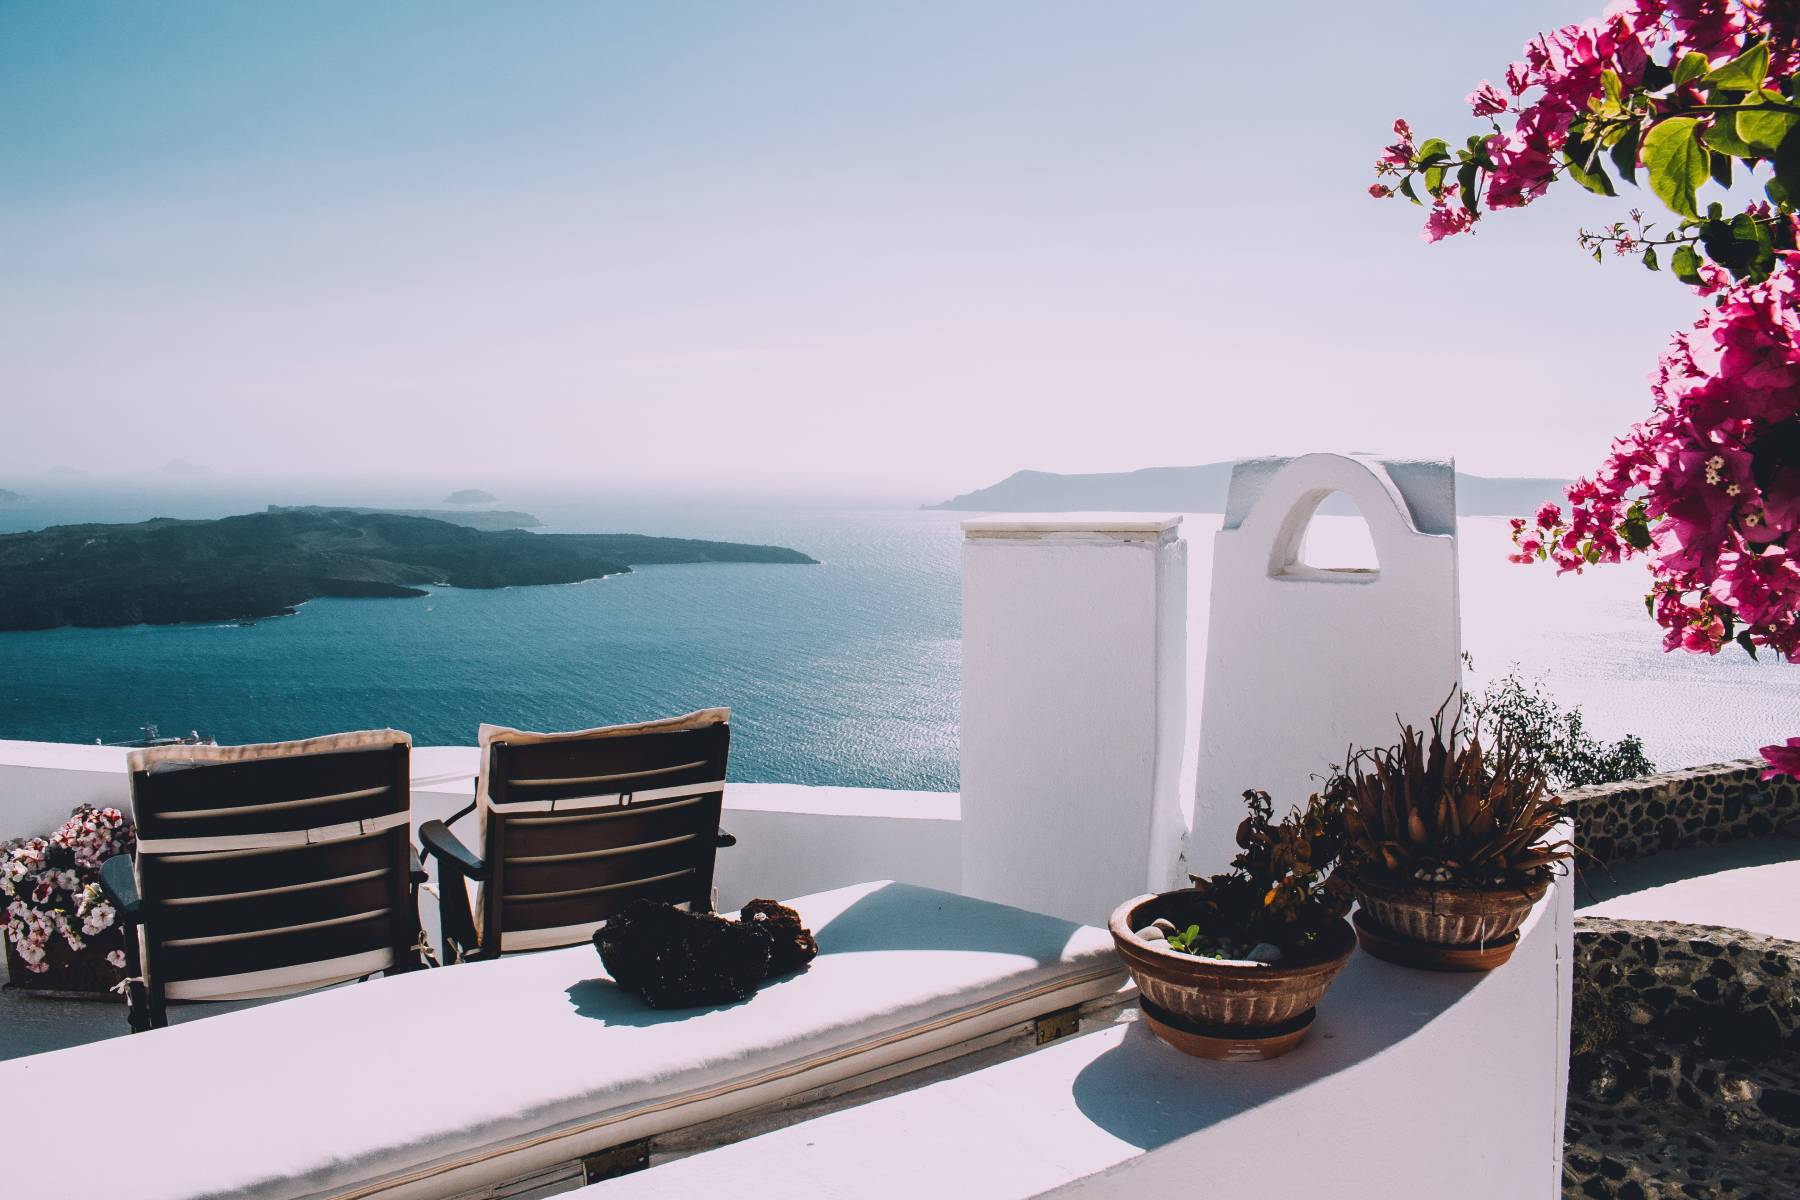 Κοινωνικός τουρισμός 2021 περιοχές: Οι προορισμοί που επέλεξαν οι Έλληνες